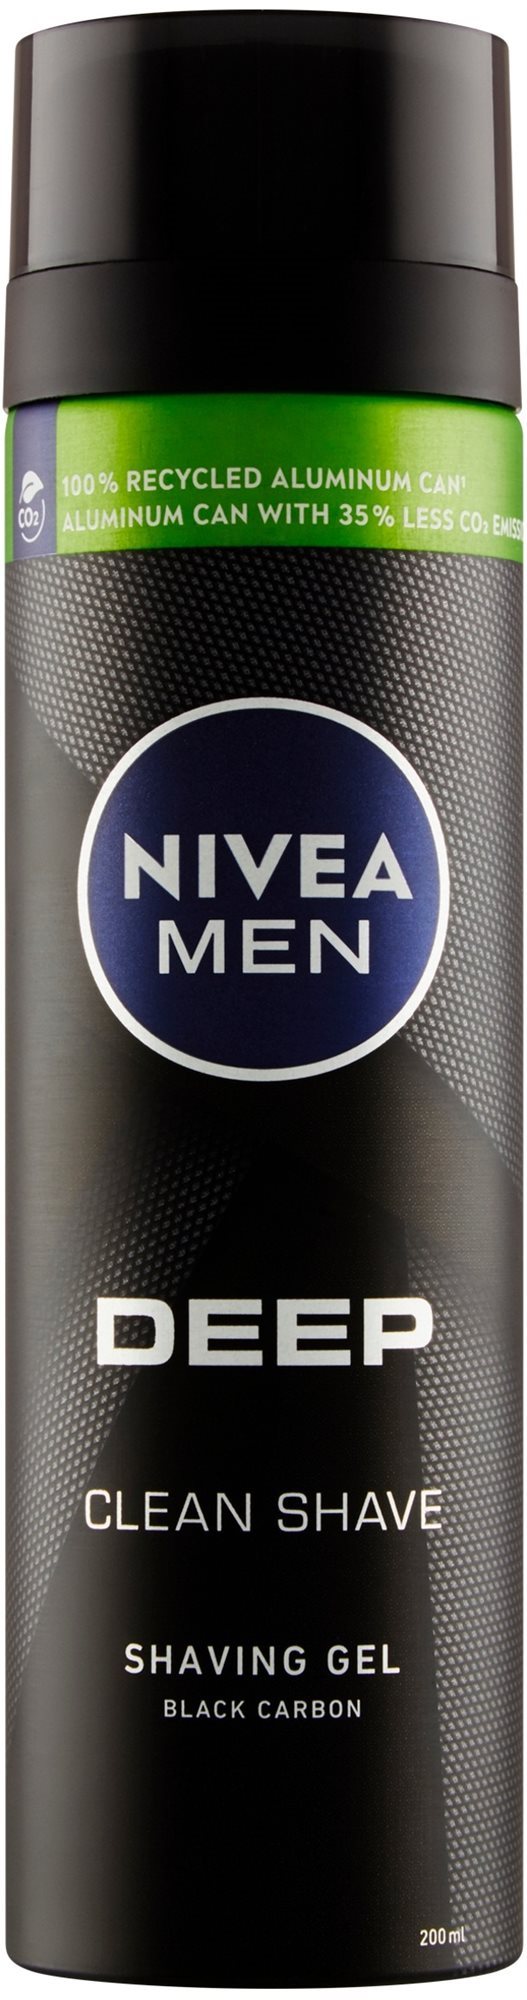 NIVEA Men Deep Shaving Gel 200 ml